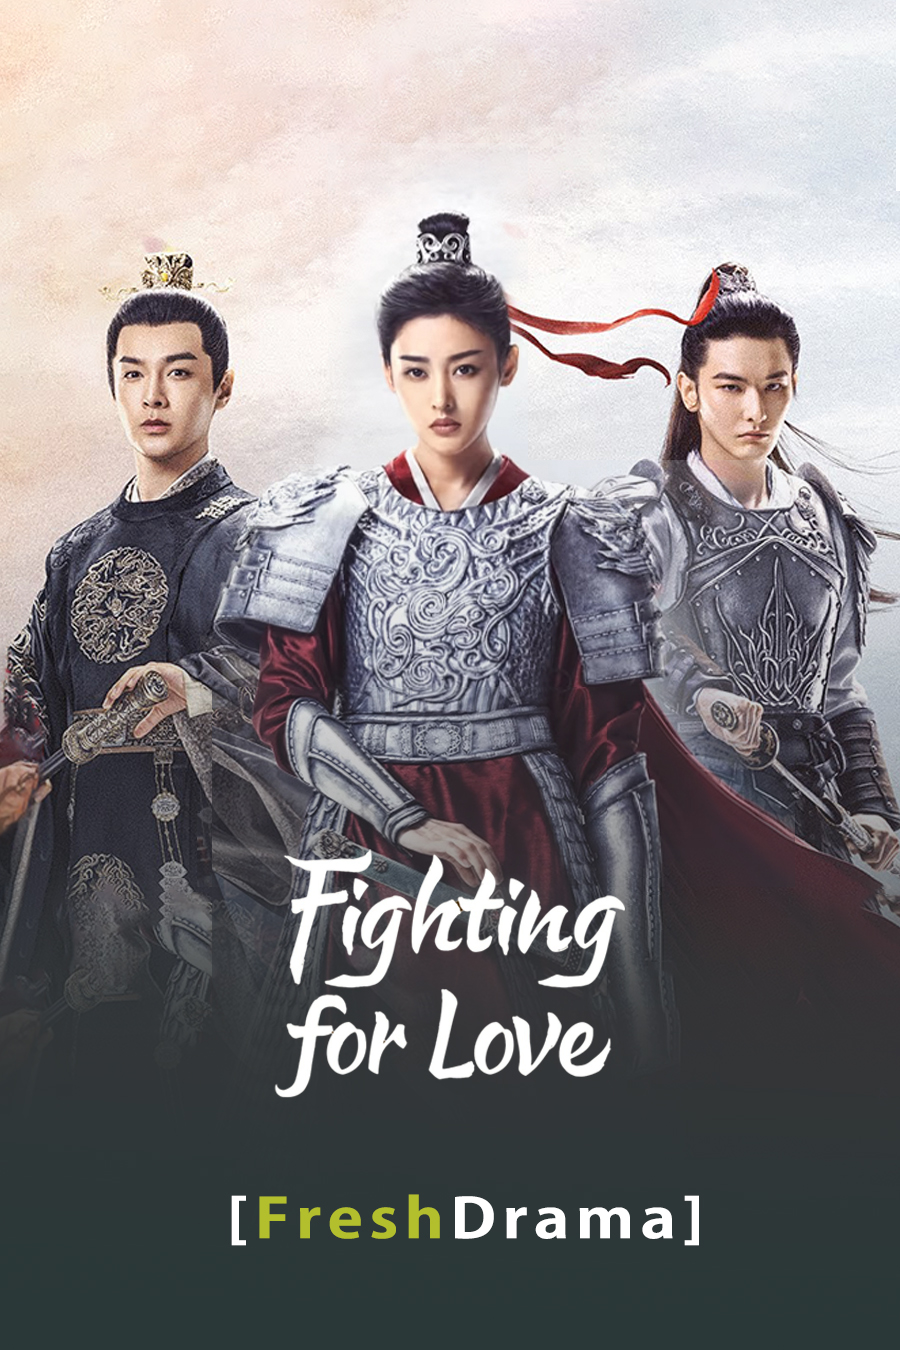 review phim A Mạch tòng quân (Fighting for love)